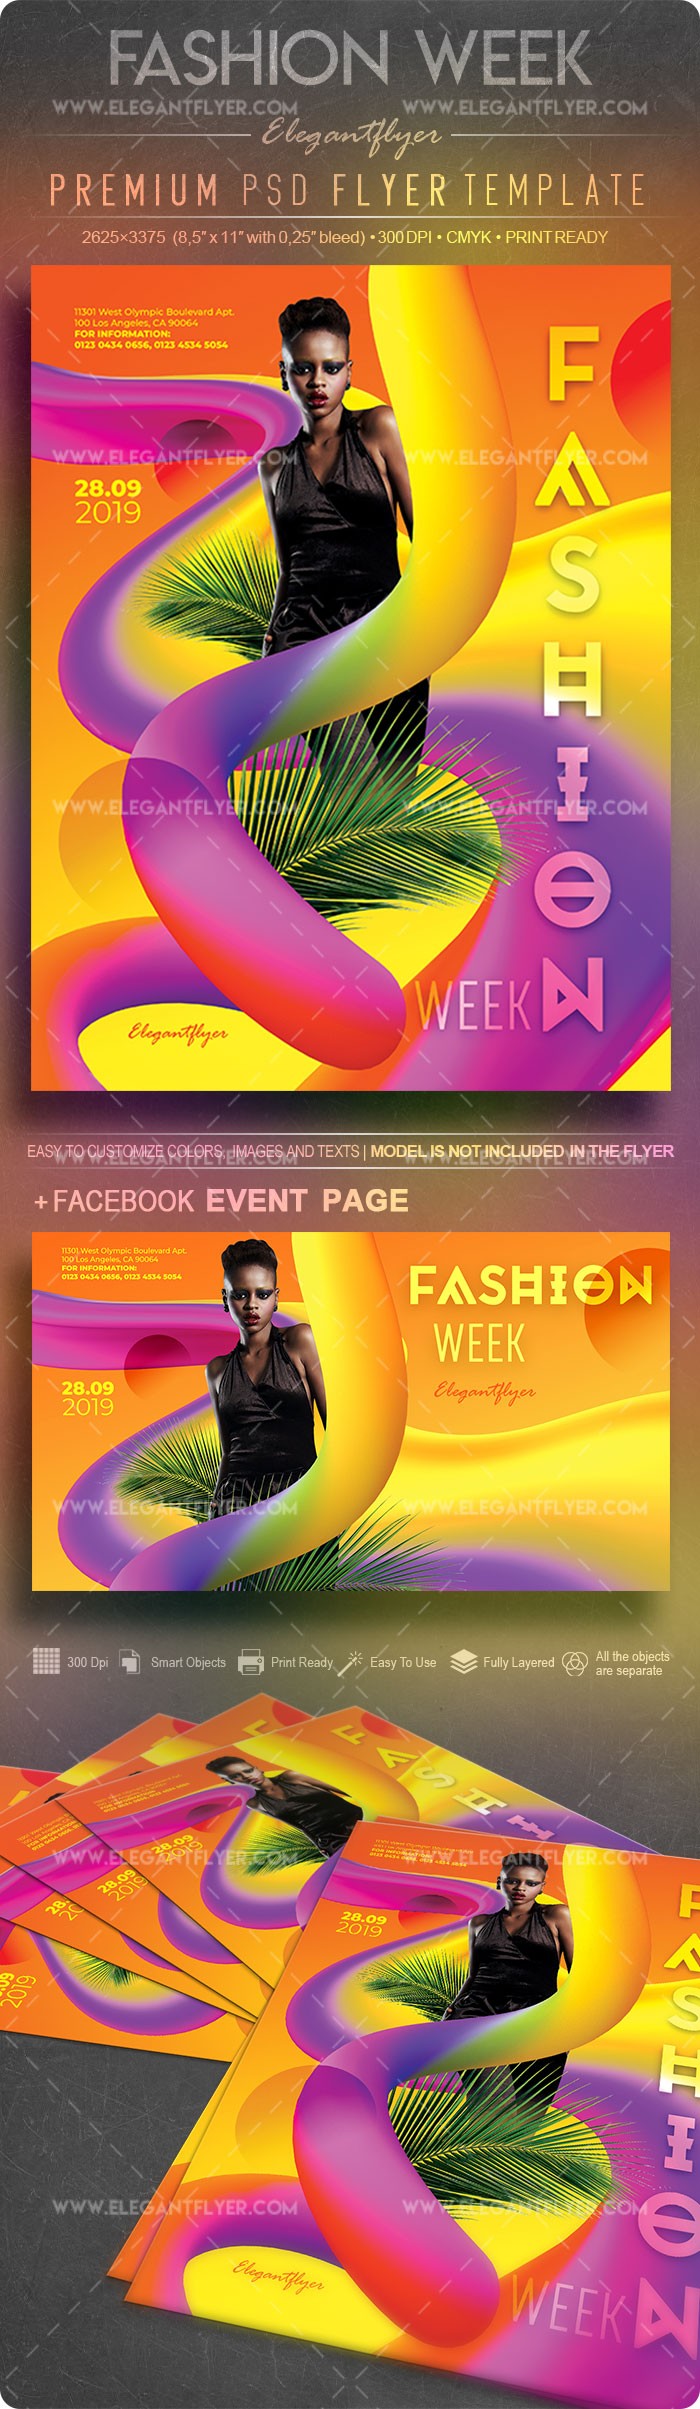 Fashion Week by ElegantFlyer